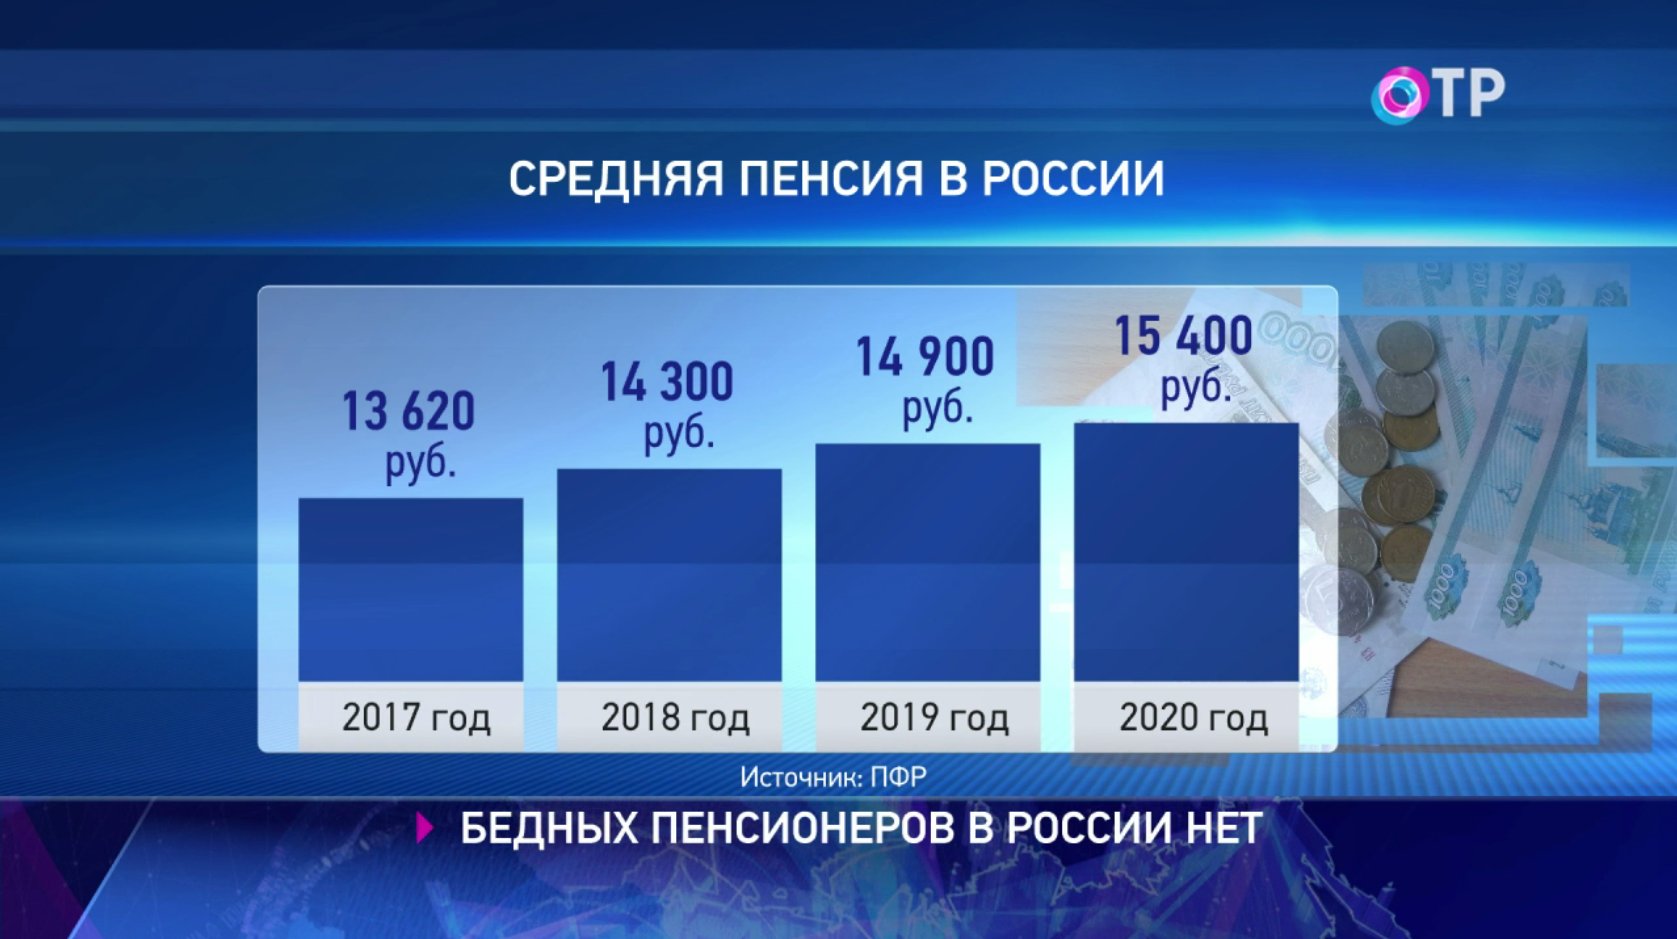 Пенсия в россии составляет. Средняя пенсия в России в 2021. Средний размер пенсии в России в 2021. Средняя пенсия по России в 2021 году. Средний размер пенсии в России в 2020 году.